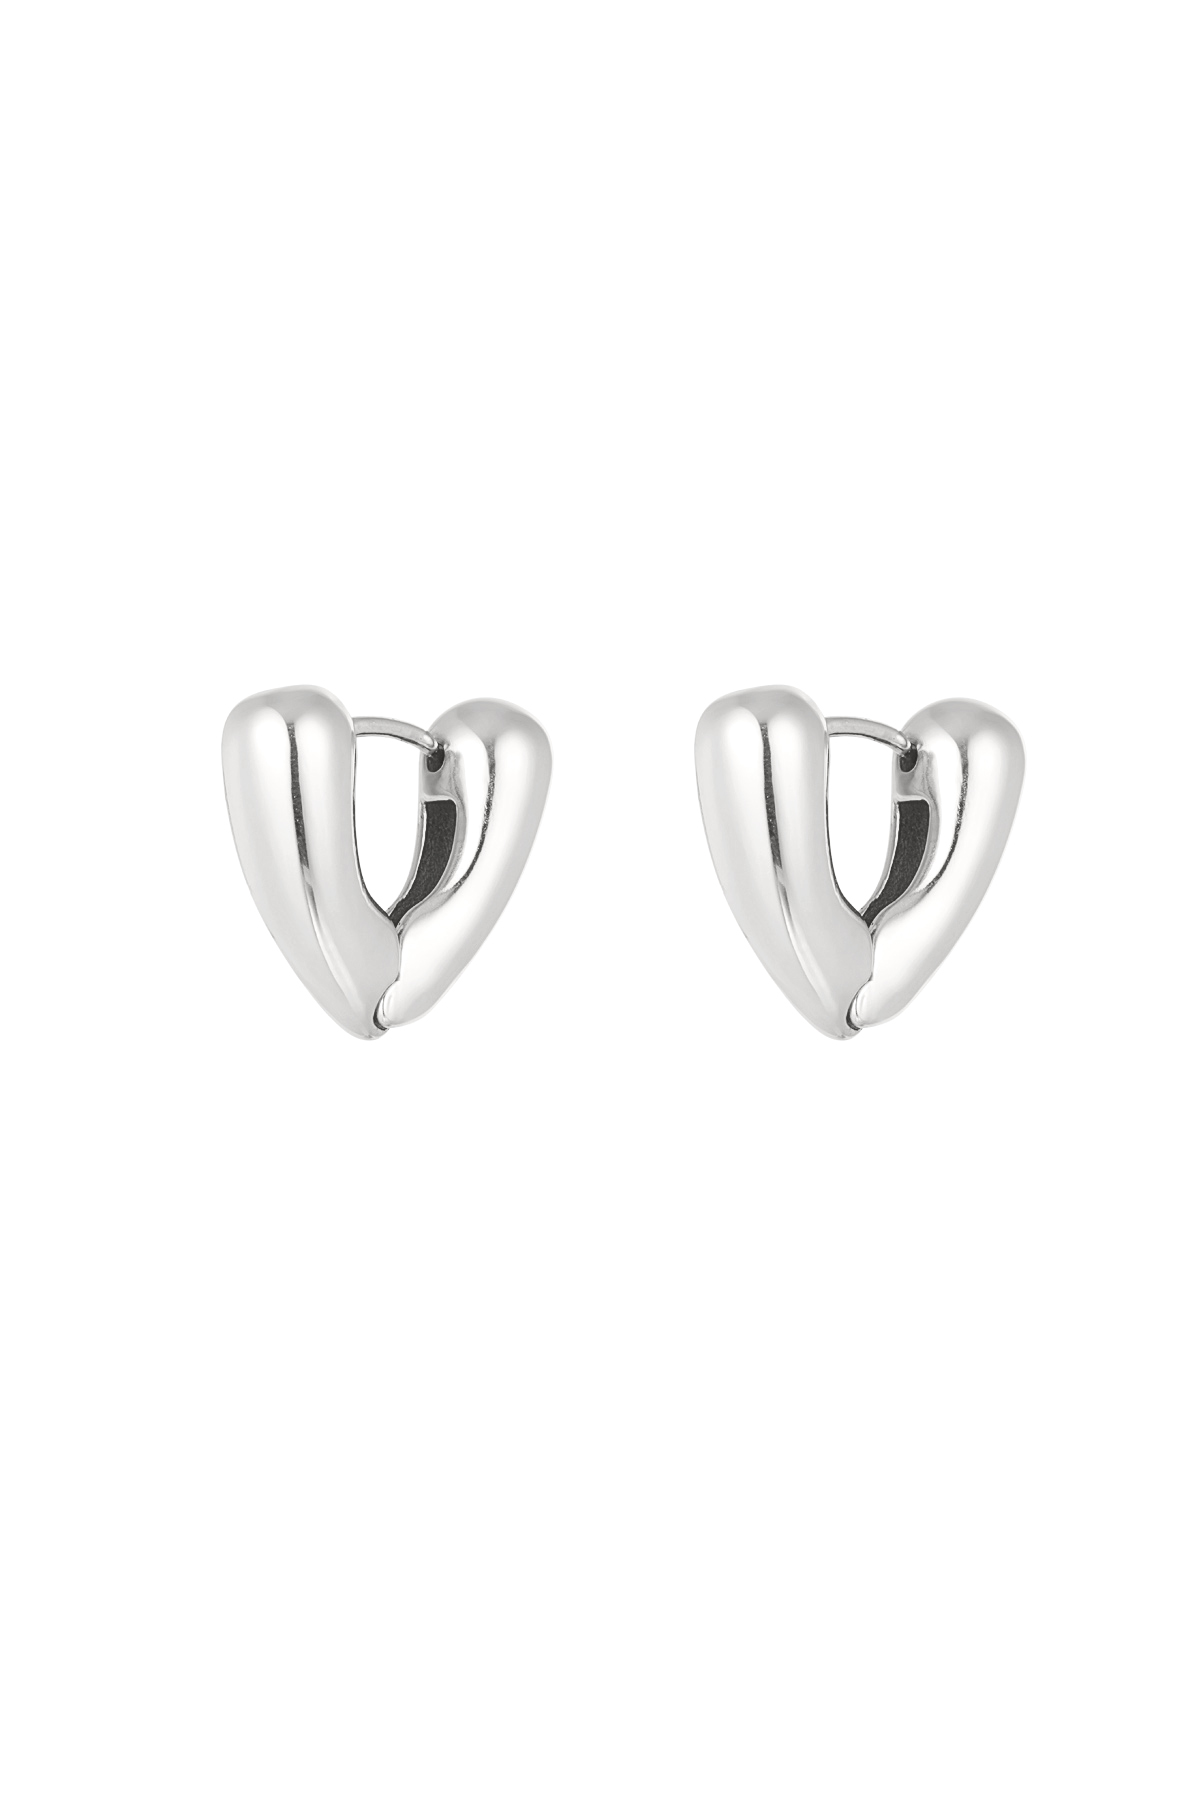 V-vorm oorbellen klein - zilver